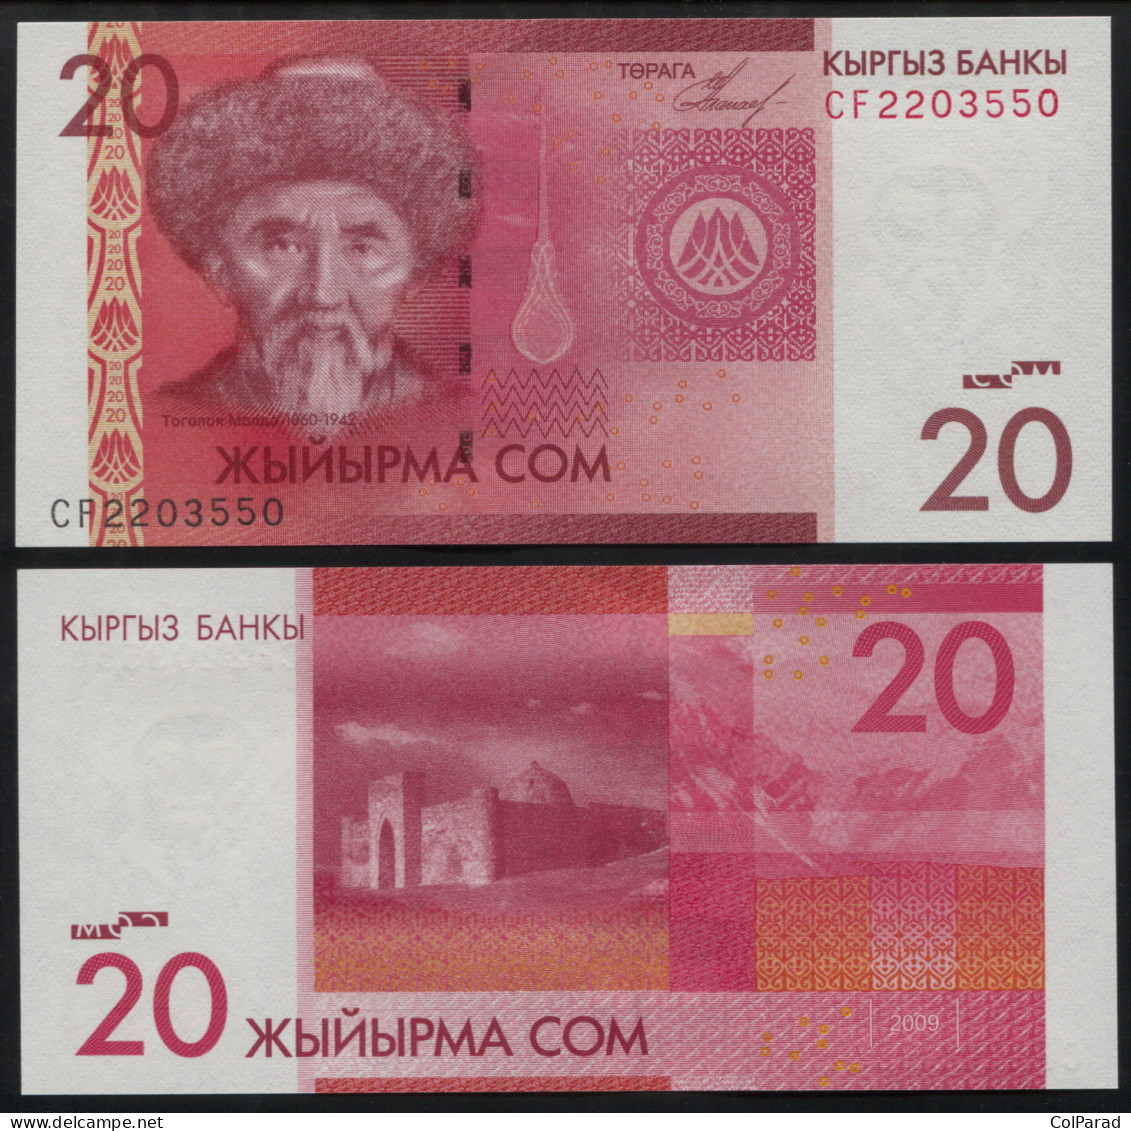 KYRGYZSTAN 20 SOM - 2009 - Unc - P.24a Paper Banknote - Kyrgyzstan